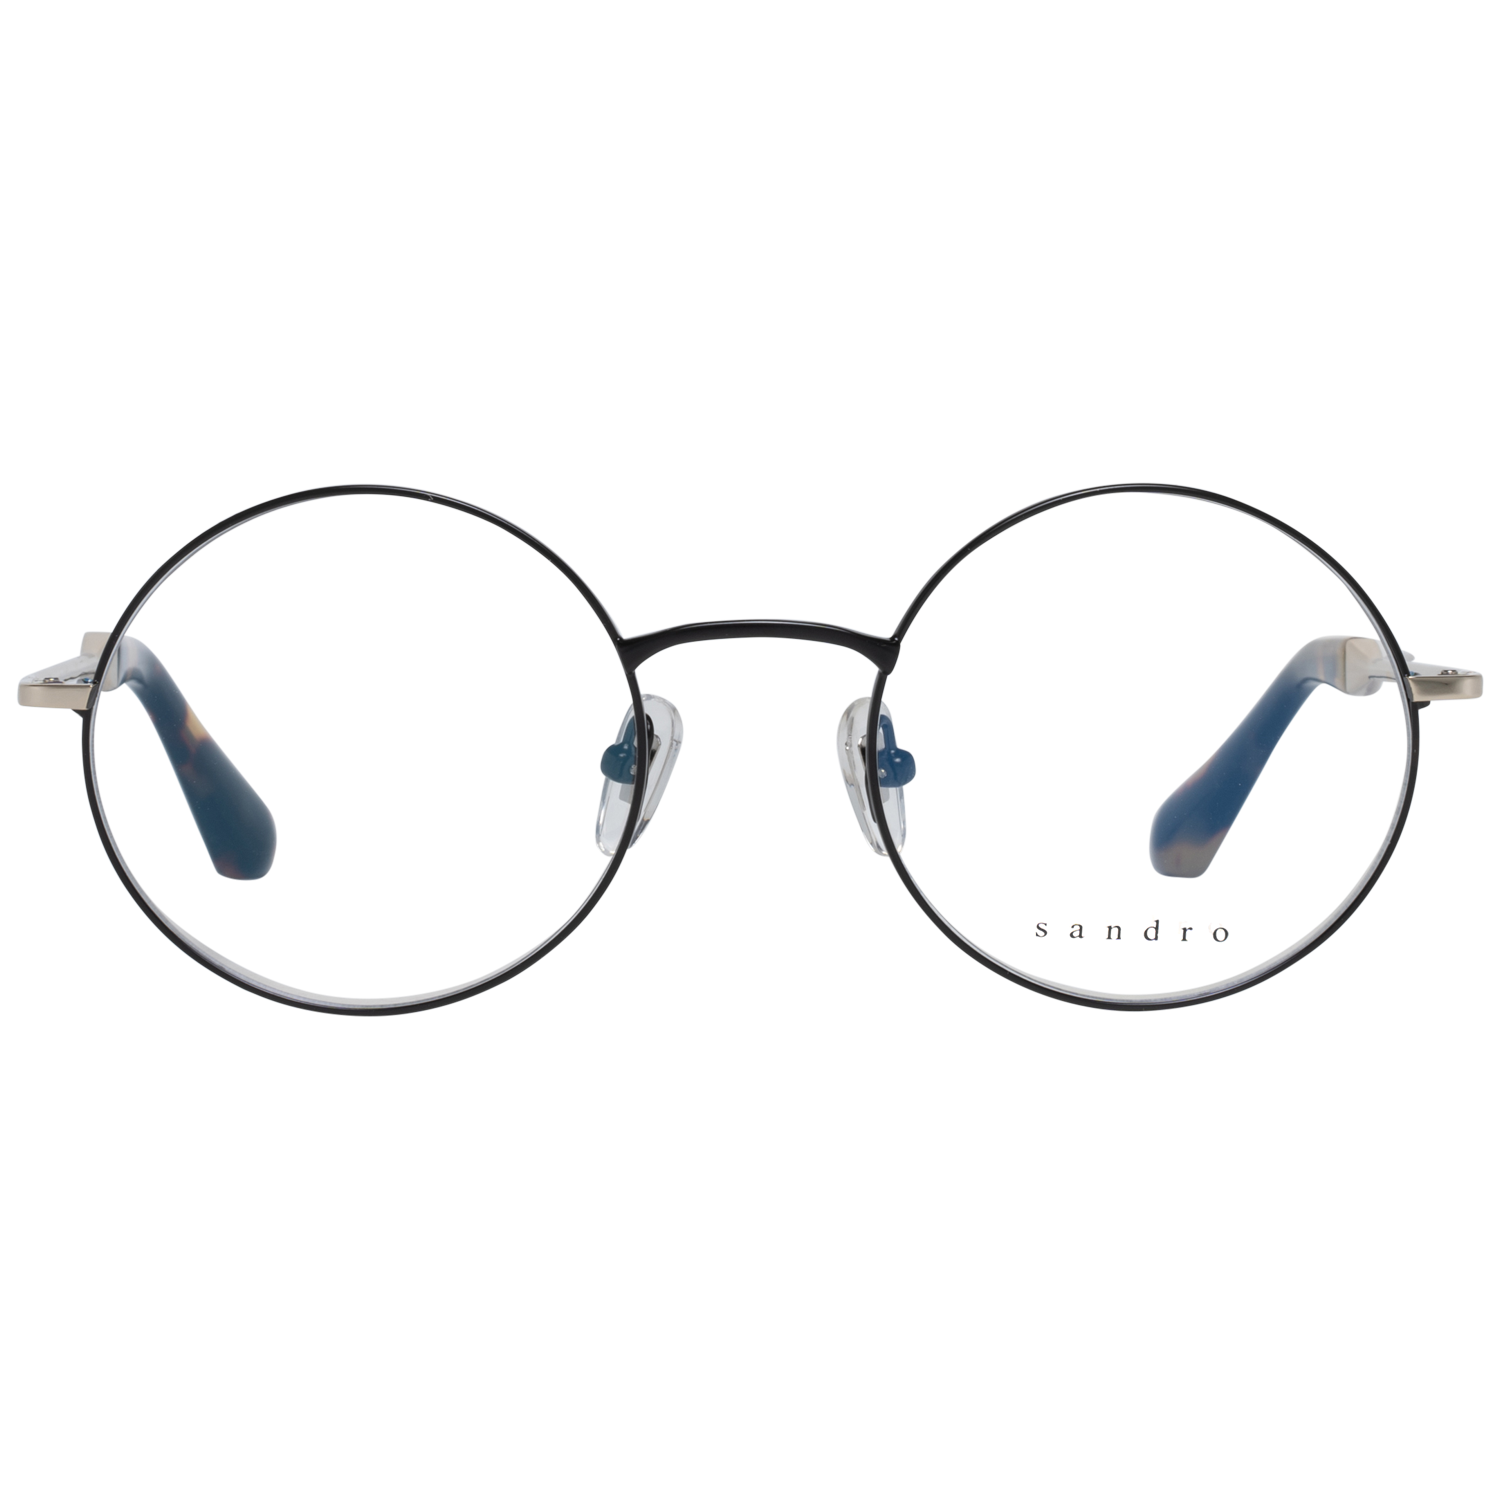 Sandro Frames Sandro Optical Frame SD4002 109 50 Eyeglasses Eyewear UK USA Australia 